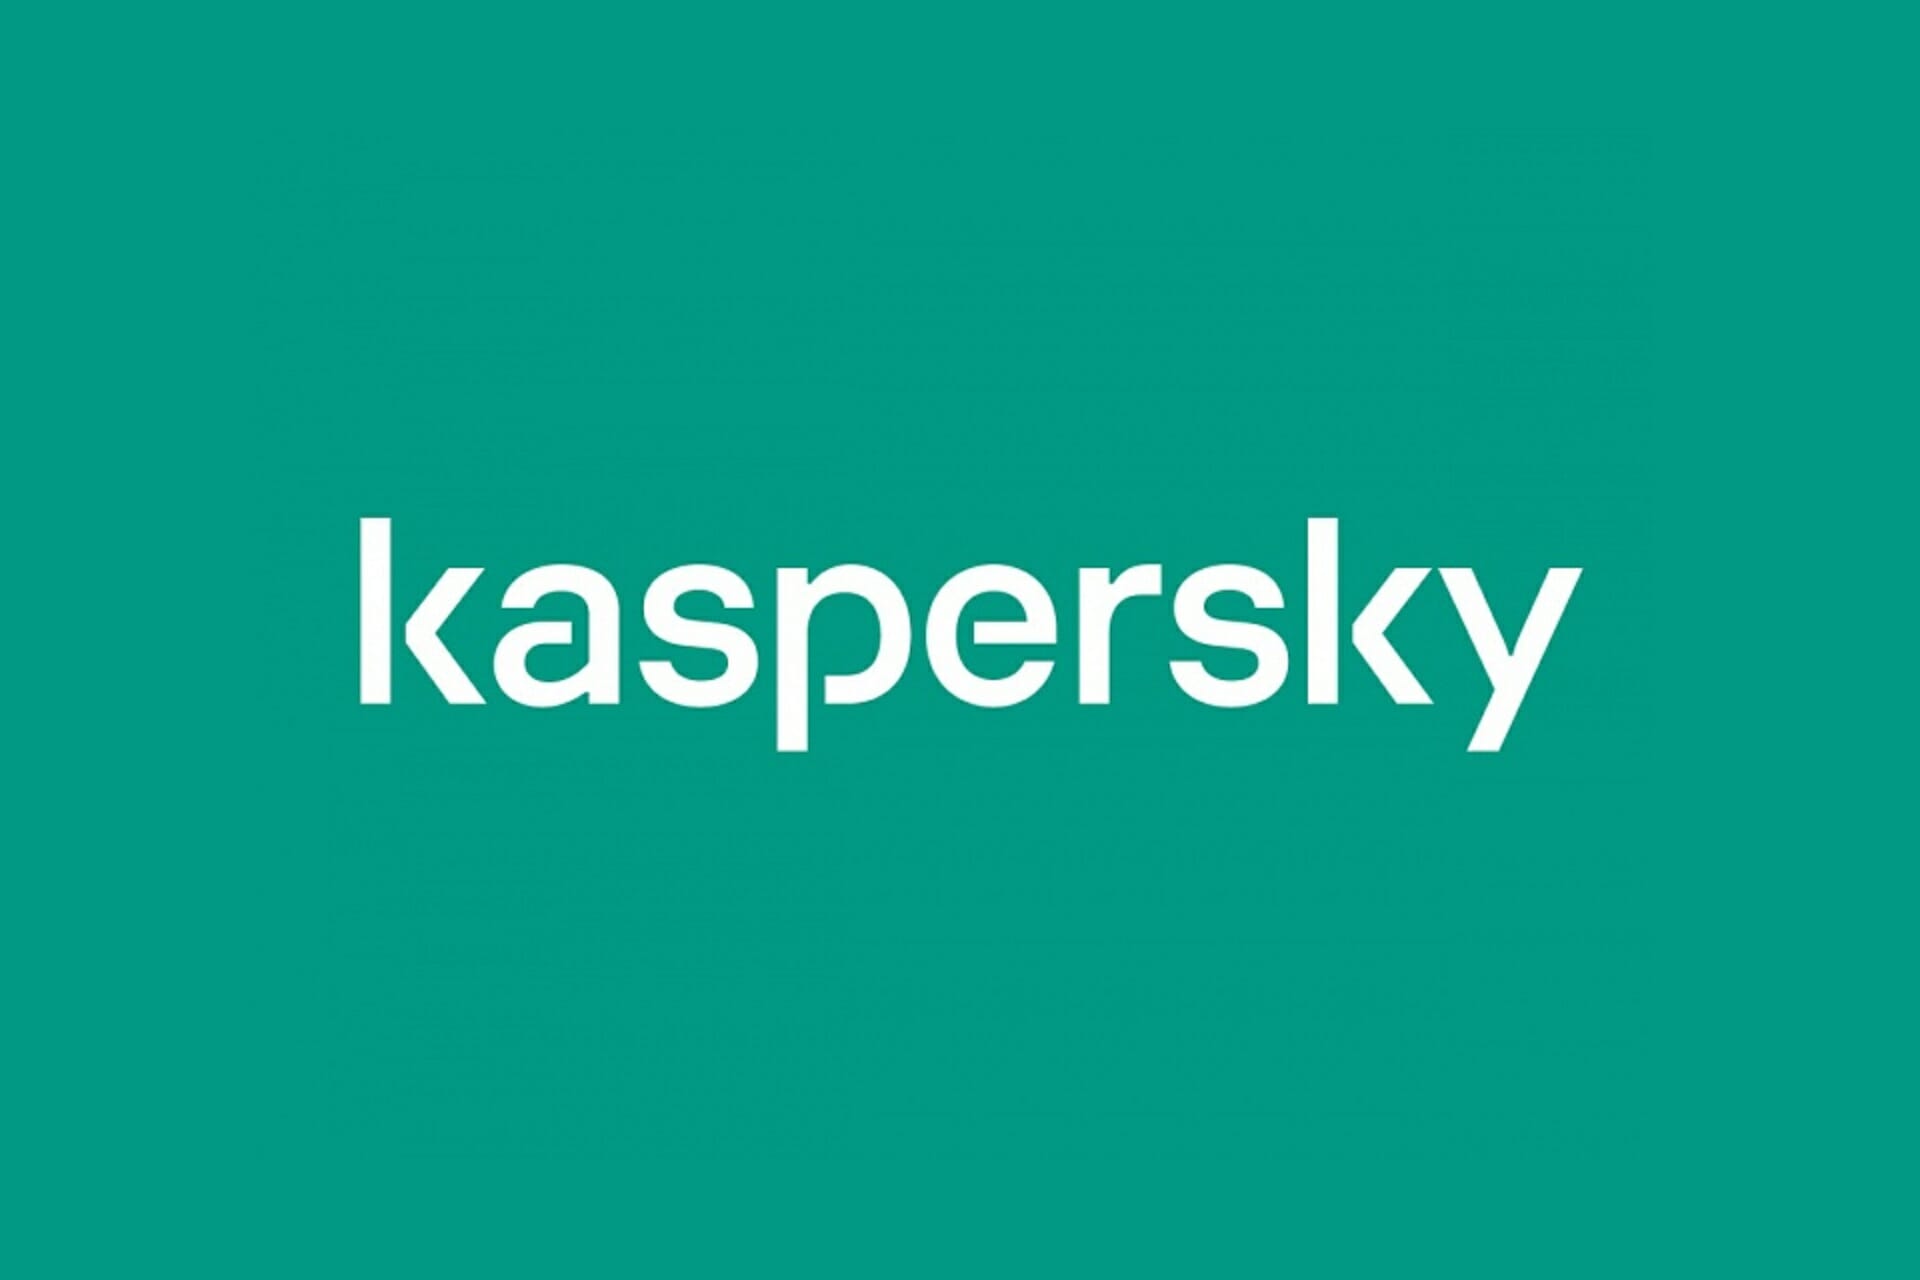 kaspersky free trial